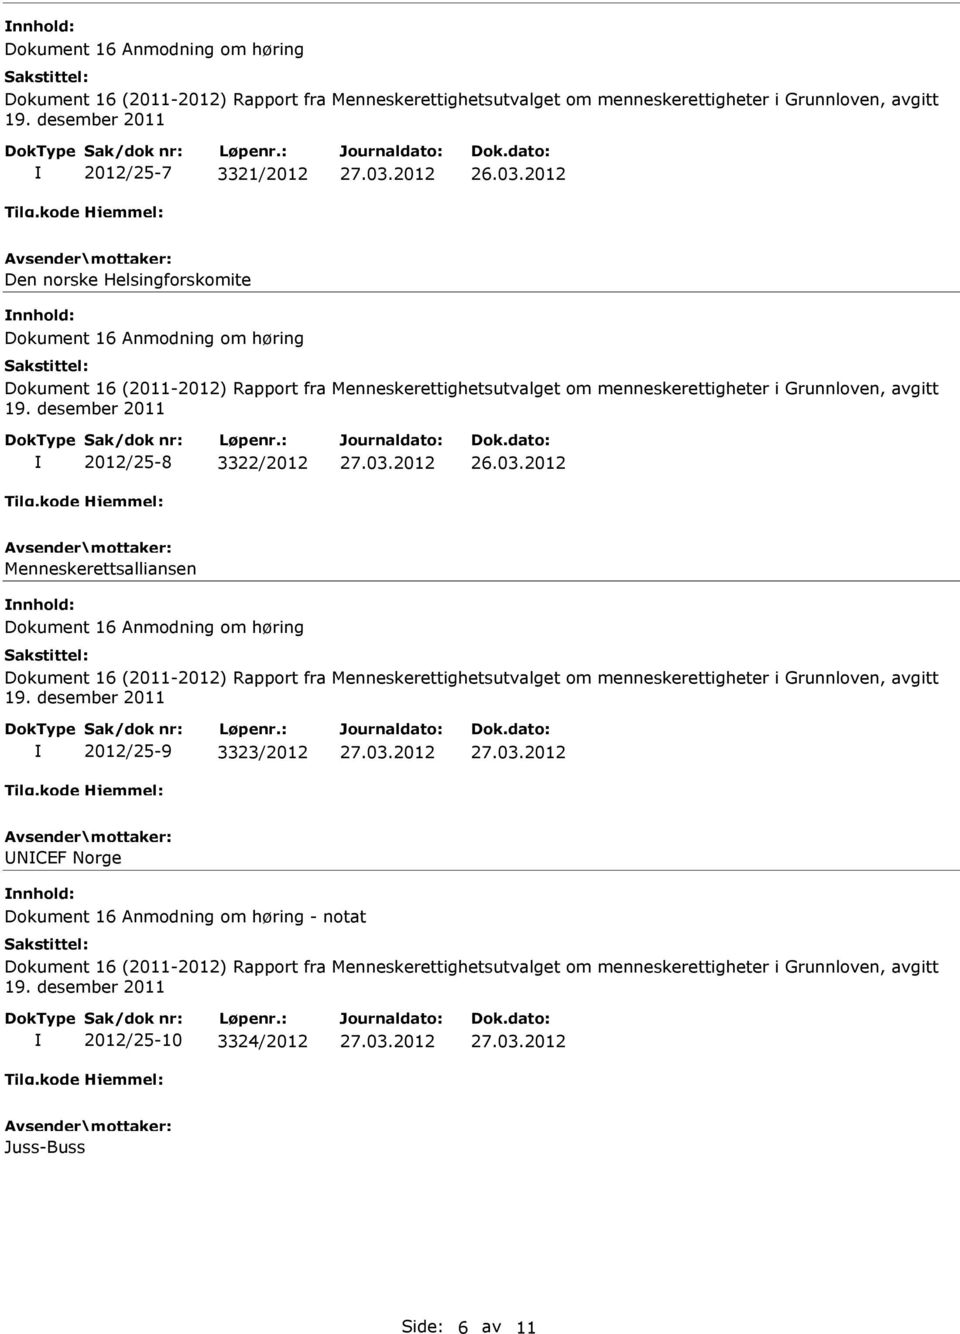 Menneskerettsalliansen Dokument 16 Anmodning om høring 2012/25-9 3323/2012